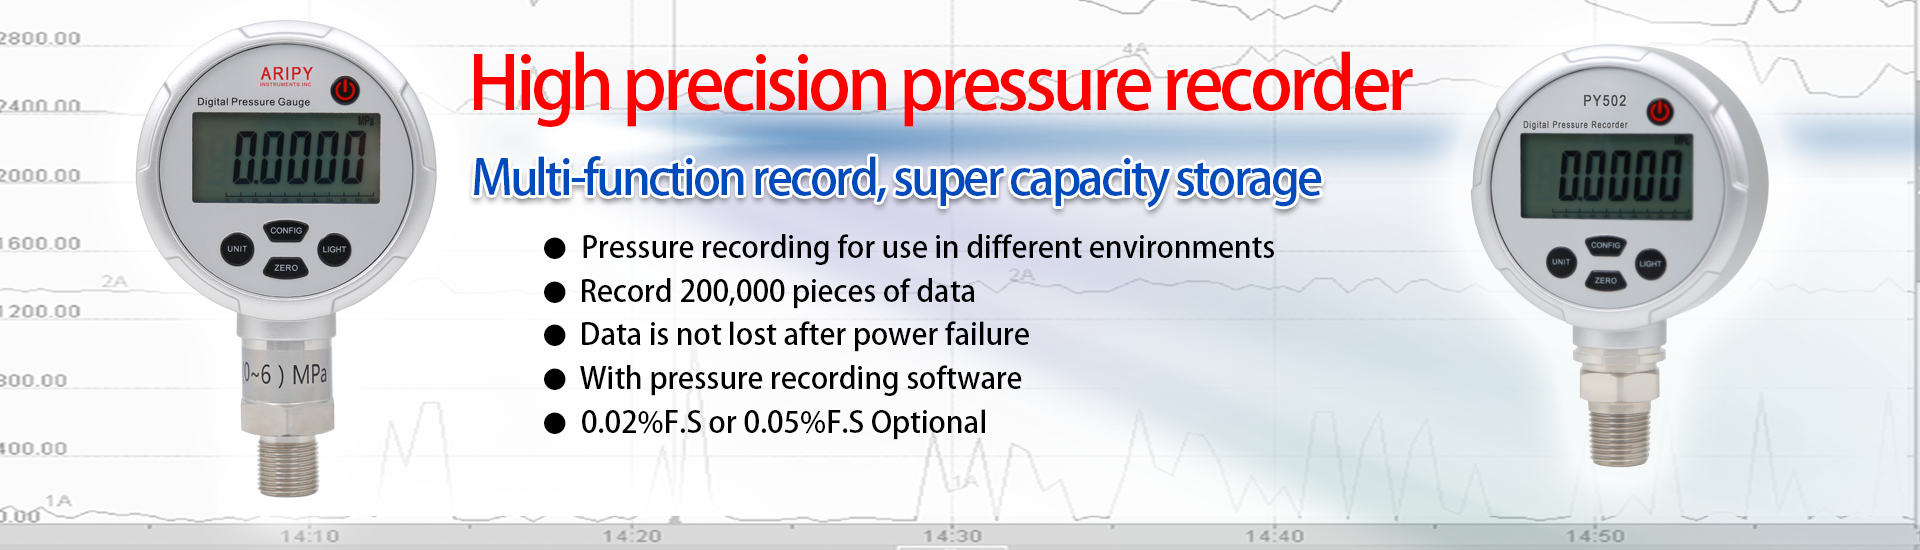 High precision pressure recorder